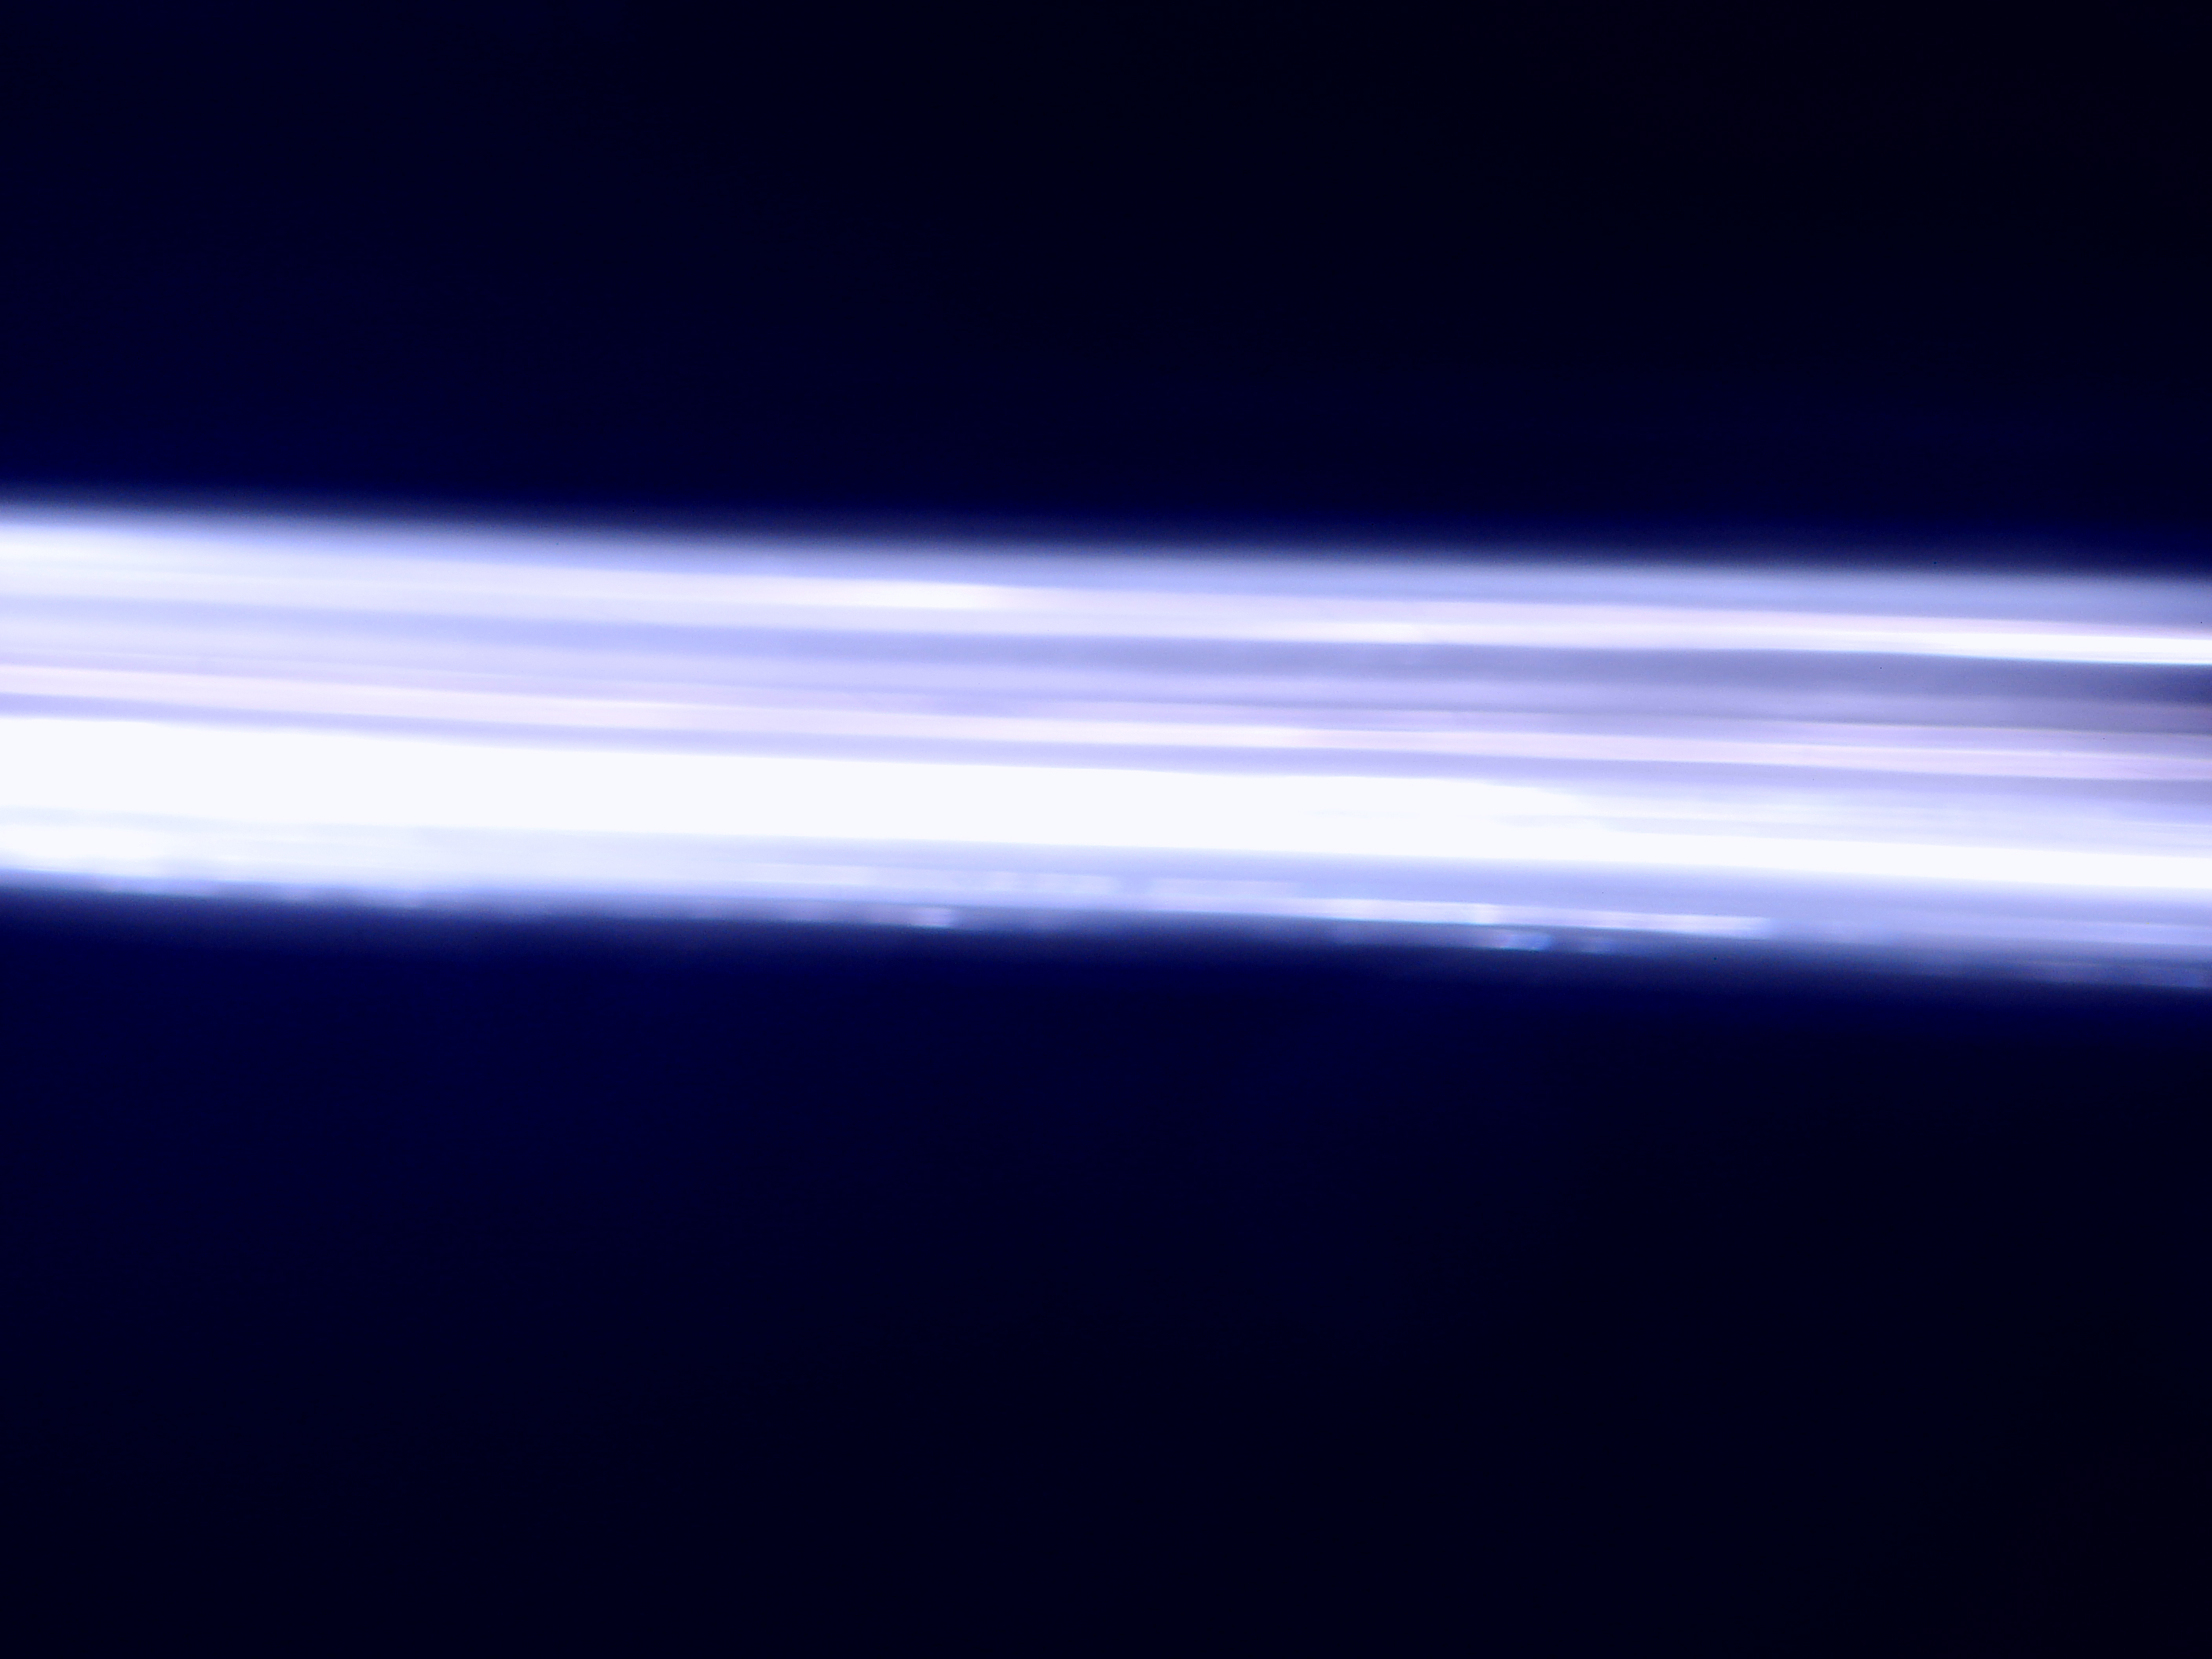 Light streaks in motion photo